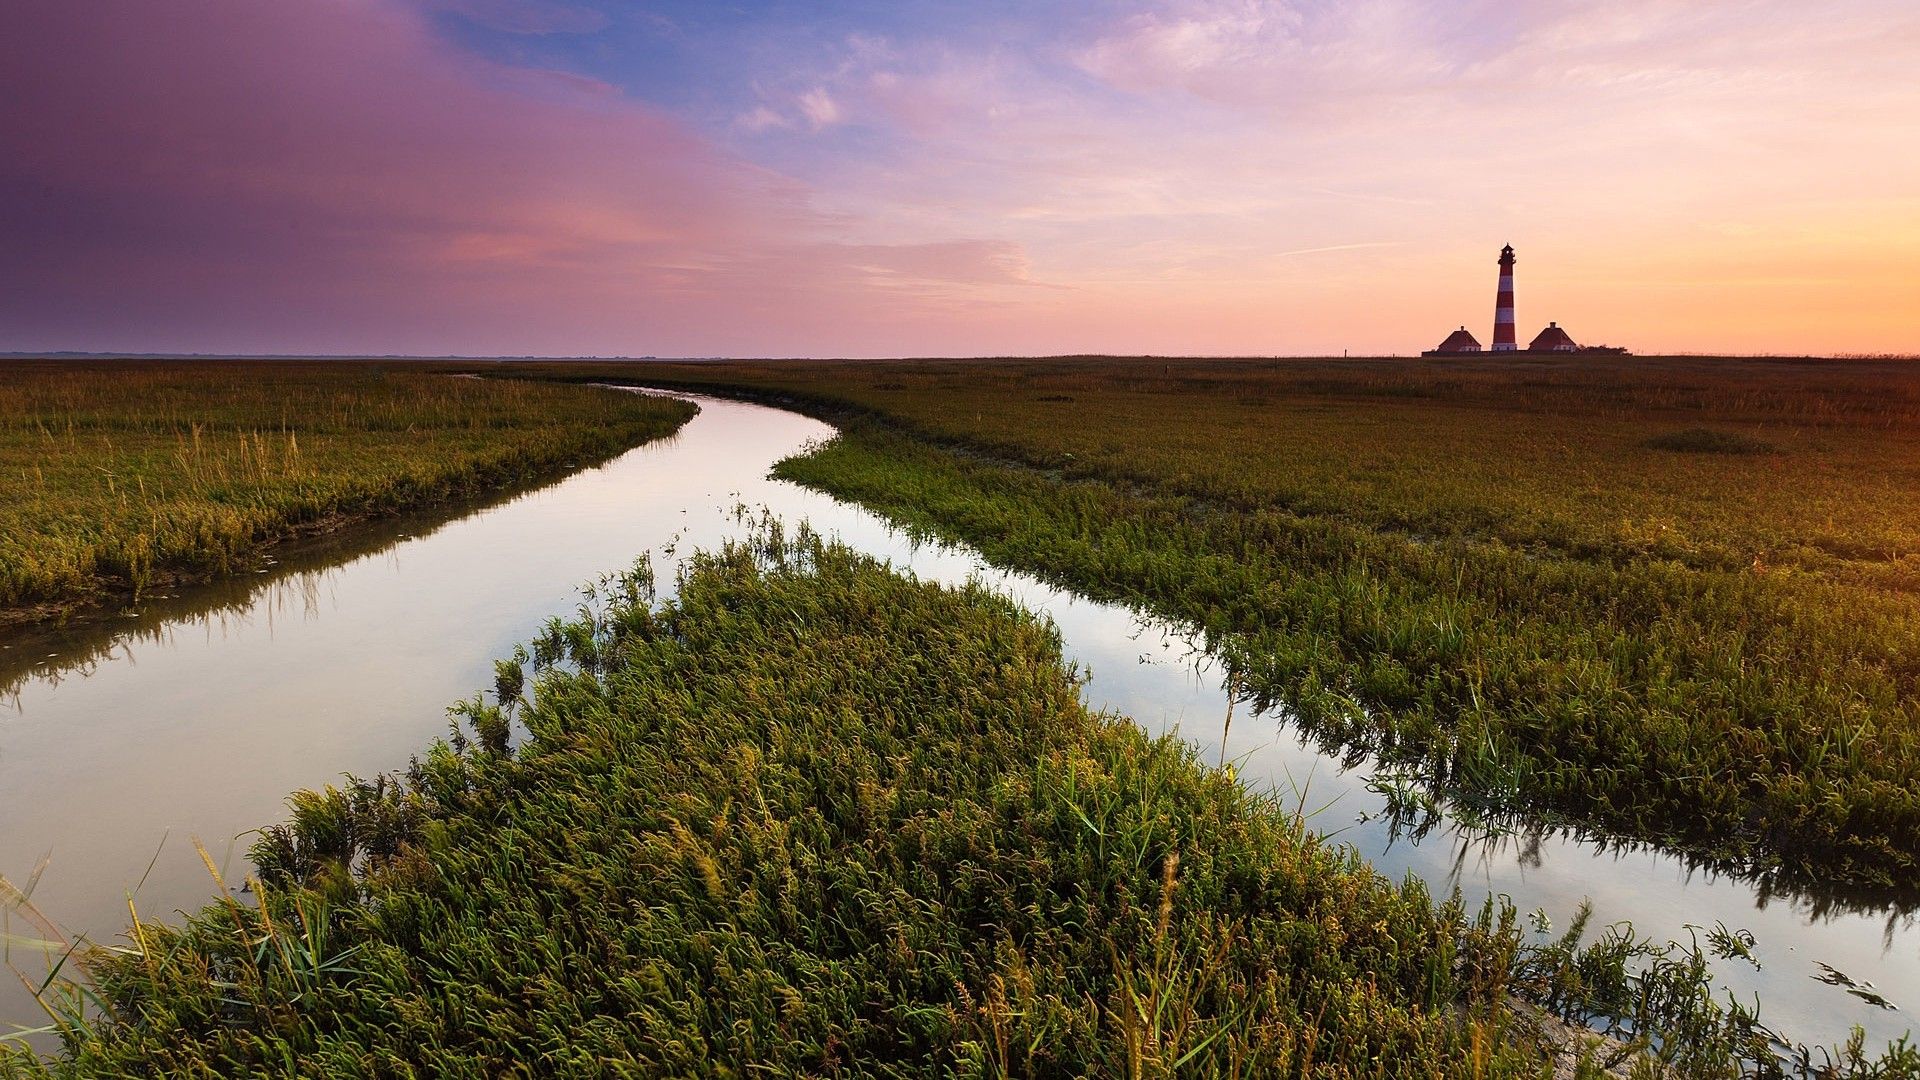 Field, canal, water, irrigation, evening, grass, vegetation, lighthouse. picture, photo, desktop wallpaper